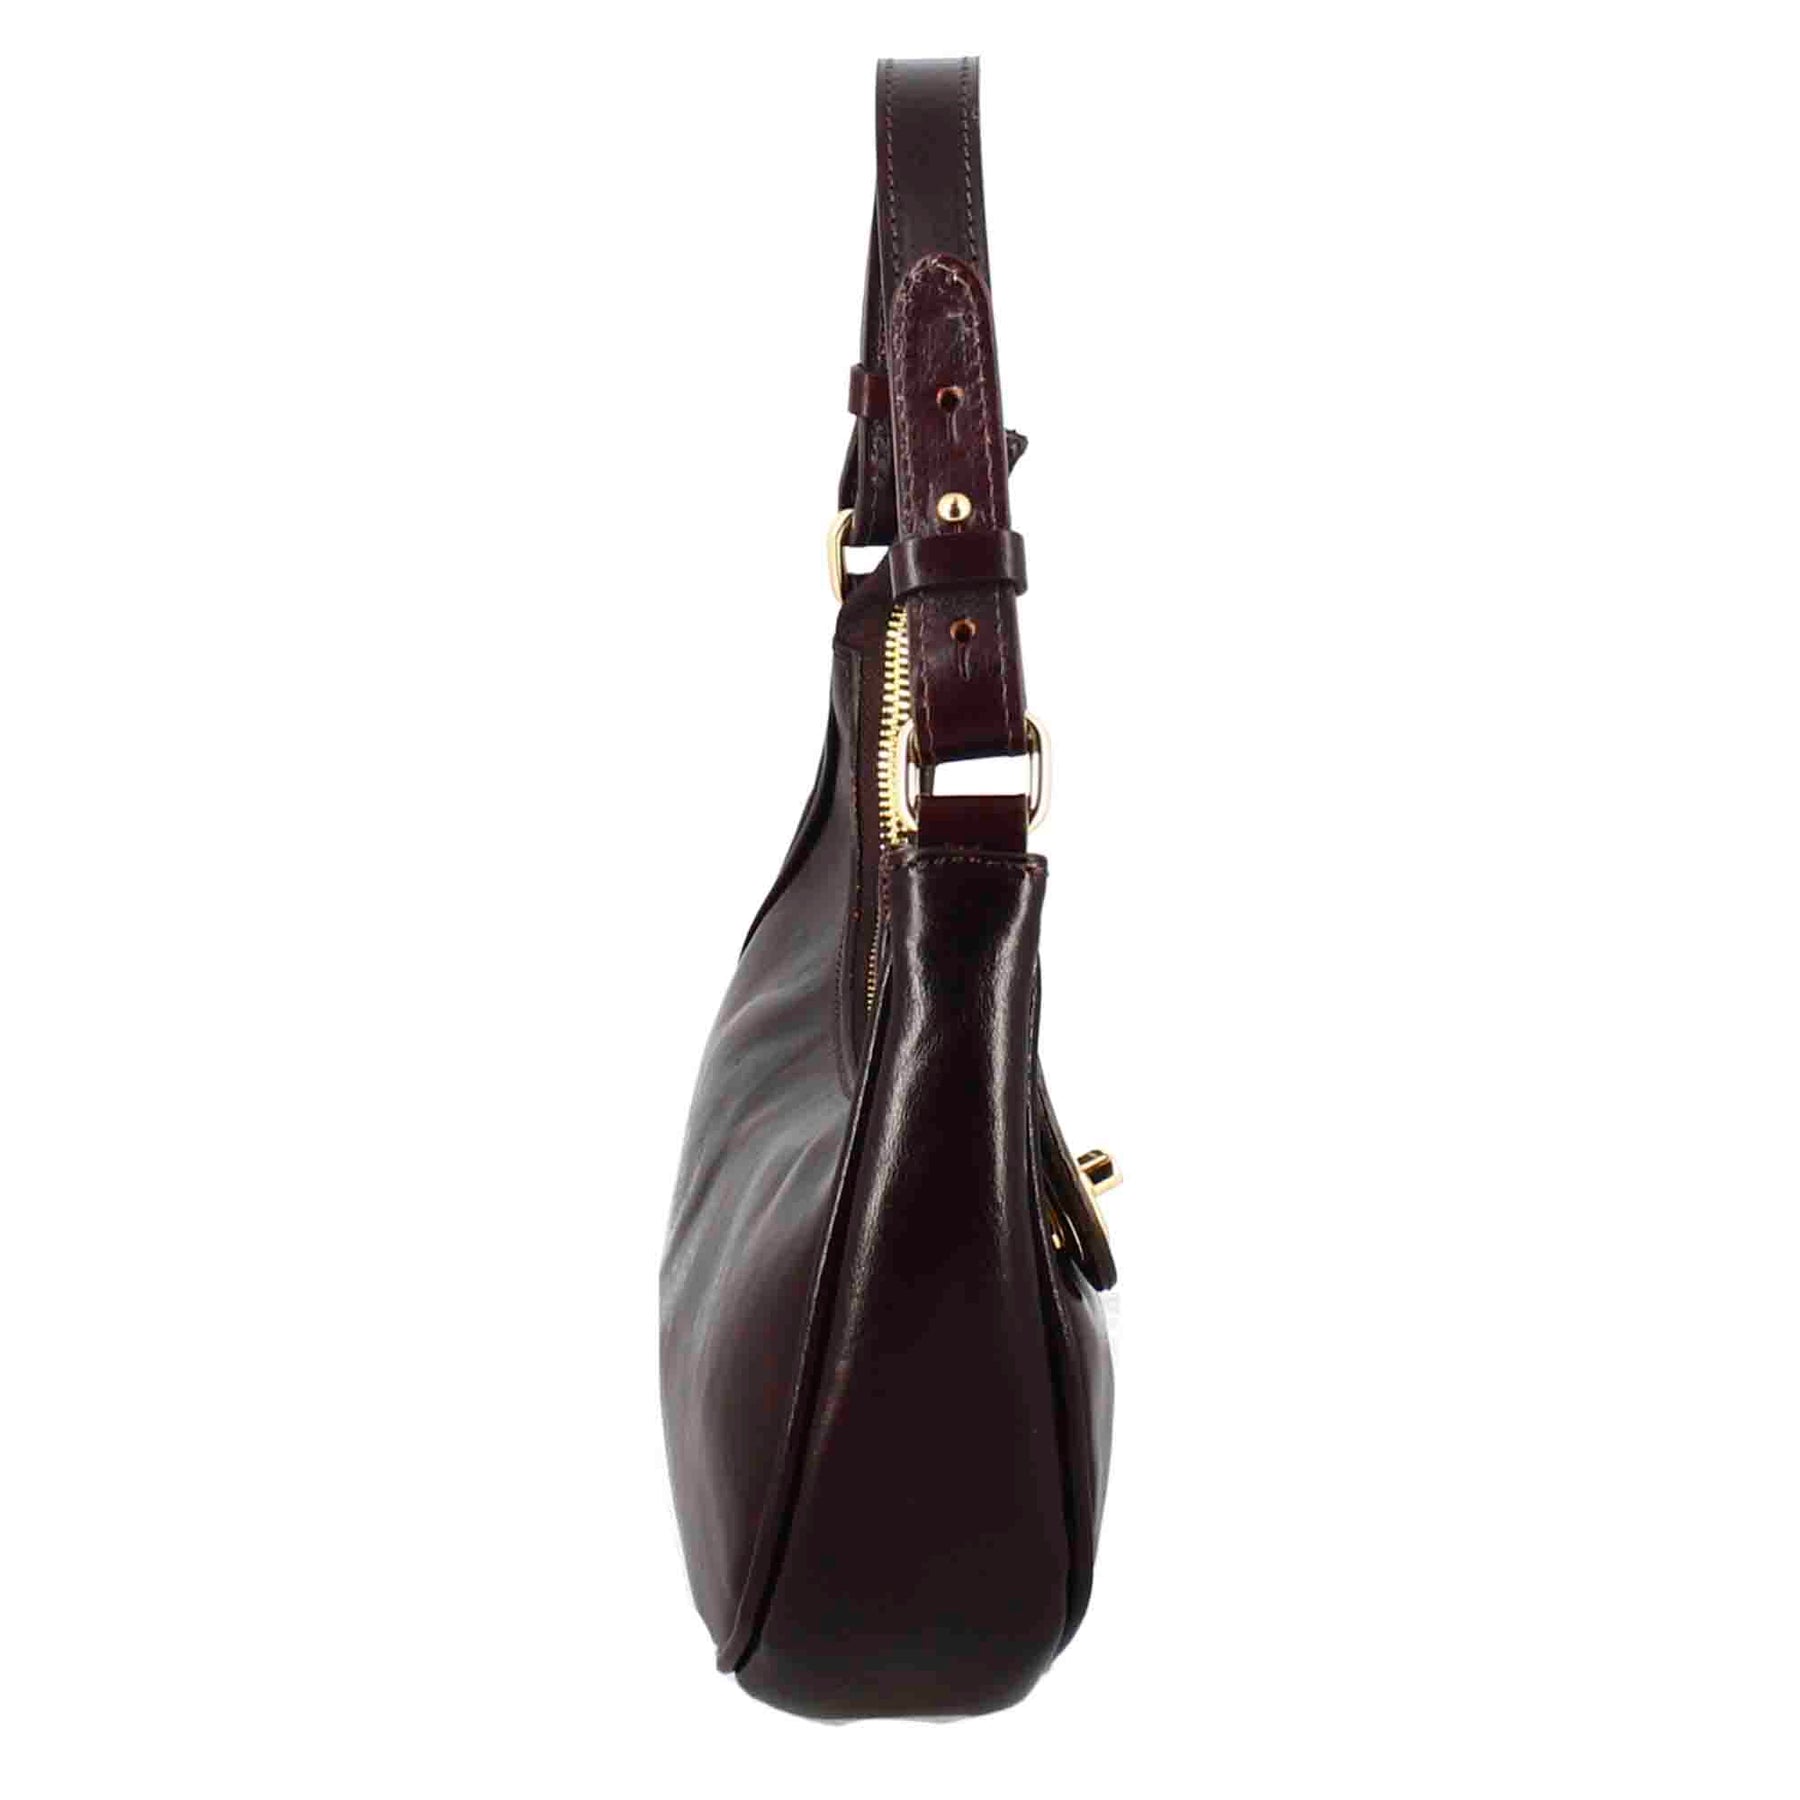 Jane shoulder bag in dark brown leather with removable shoulder strap